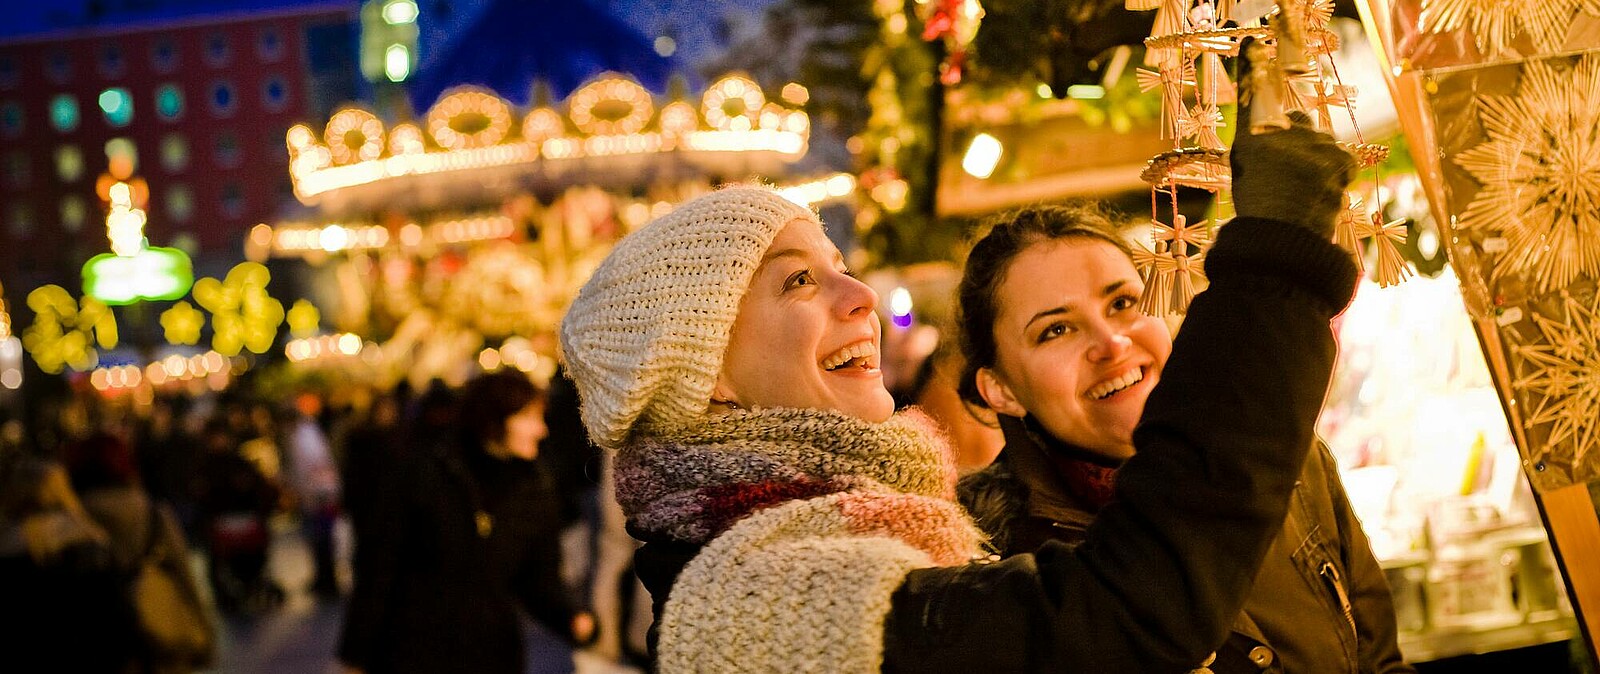 Die Stadt Leipzig leuchtet zur Weihnachtszeit in einem ganz besonderen Licht! Erkunden Sie die Stadt und genießen Sie eine heiße Tasse Glühwein, bevor Sie das Adventskonzert im Gewandhaus genießen.